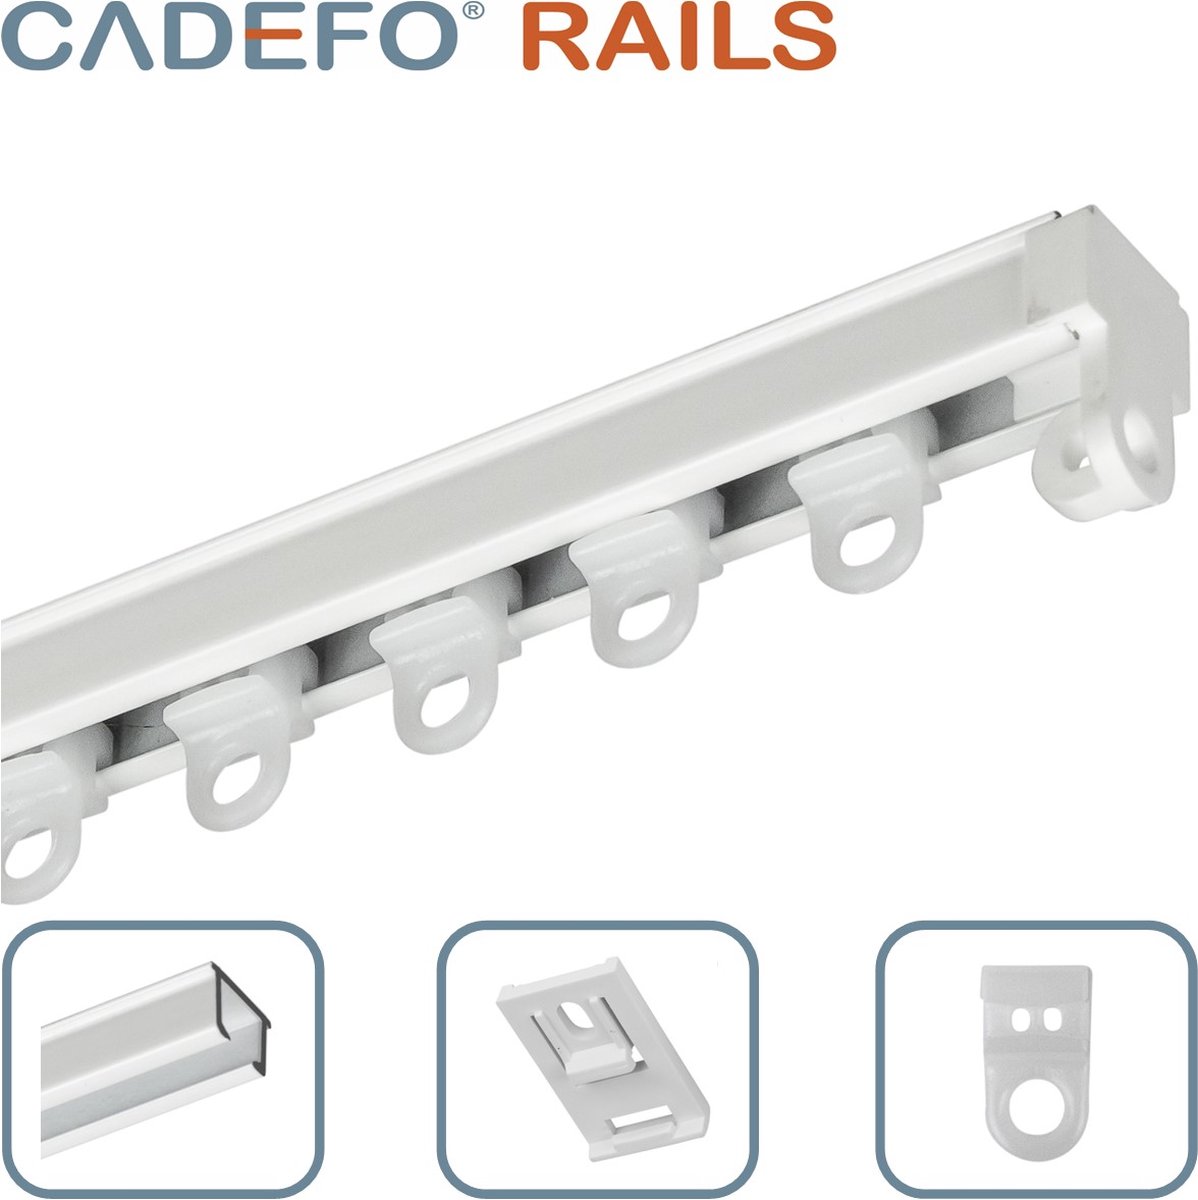 CADEFO RAILS (401 - 450 cm) Gordijnrails - Compleet op maat! - UIT 1 STUK - Leverbaar tot 6 meter - Plafondbevestiging - Lengte 434 cm